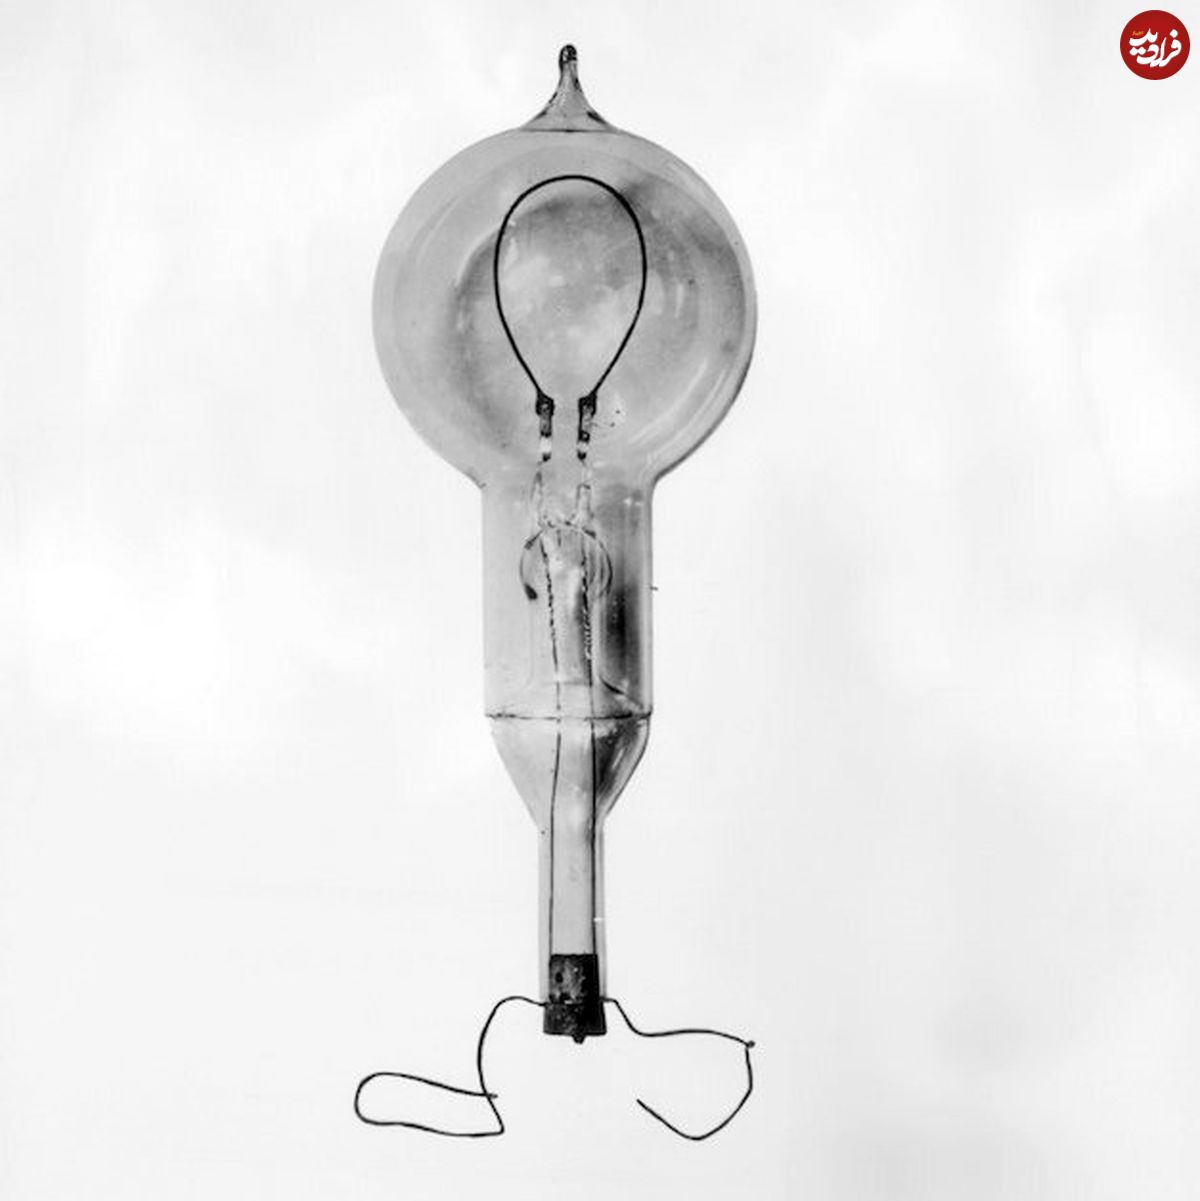 مخترع لامپ؛ ادیسون یا لاتیمر؟!